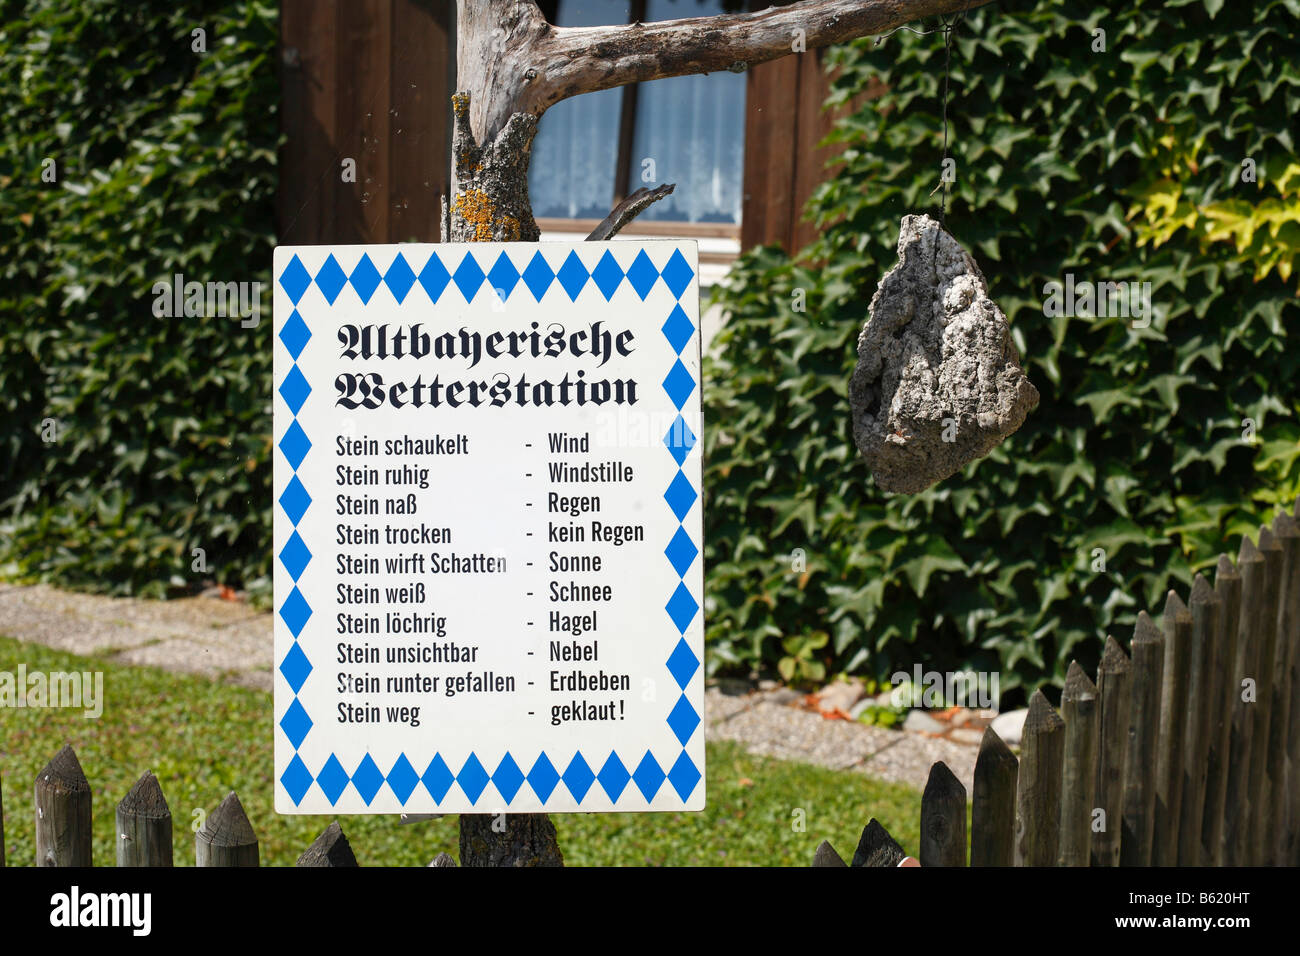 Historische bayerische Wetterstation mit einem hängenden Stein, Oberbayern,  Deutschland, Europa Stockfotografie - Alamy